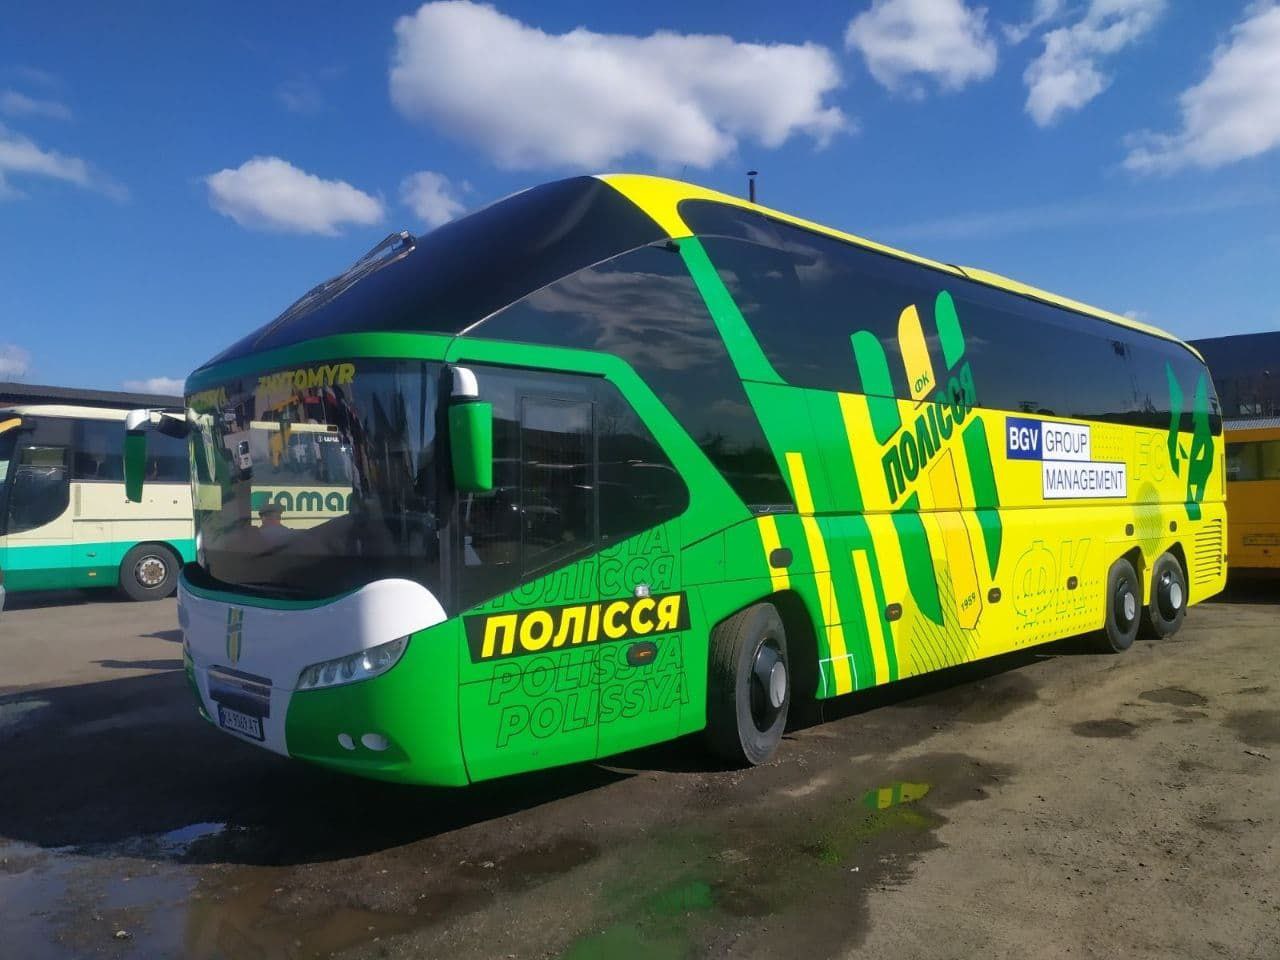 У Житомирі показали новий клубний автобус ФК Полісся після брендування. ФОТО